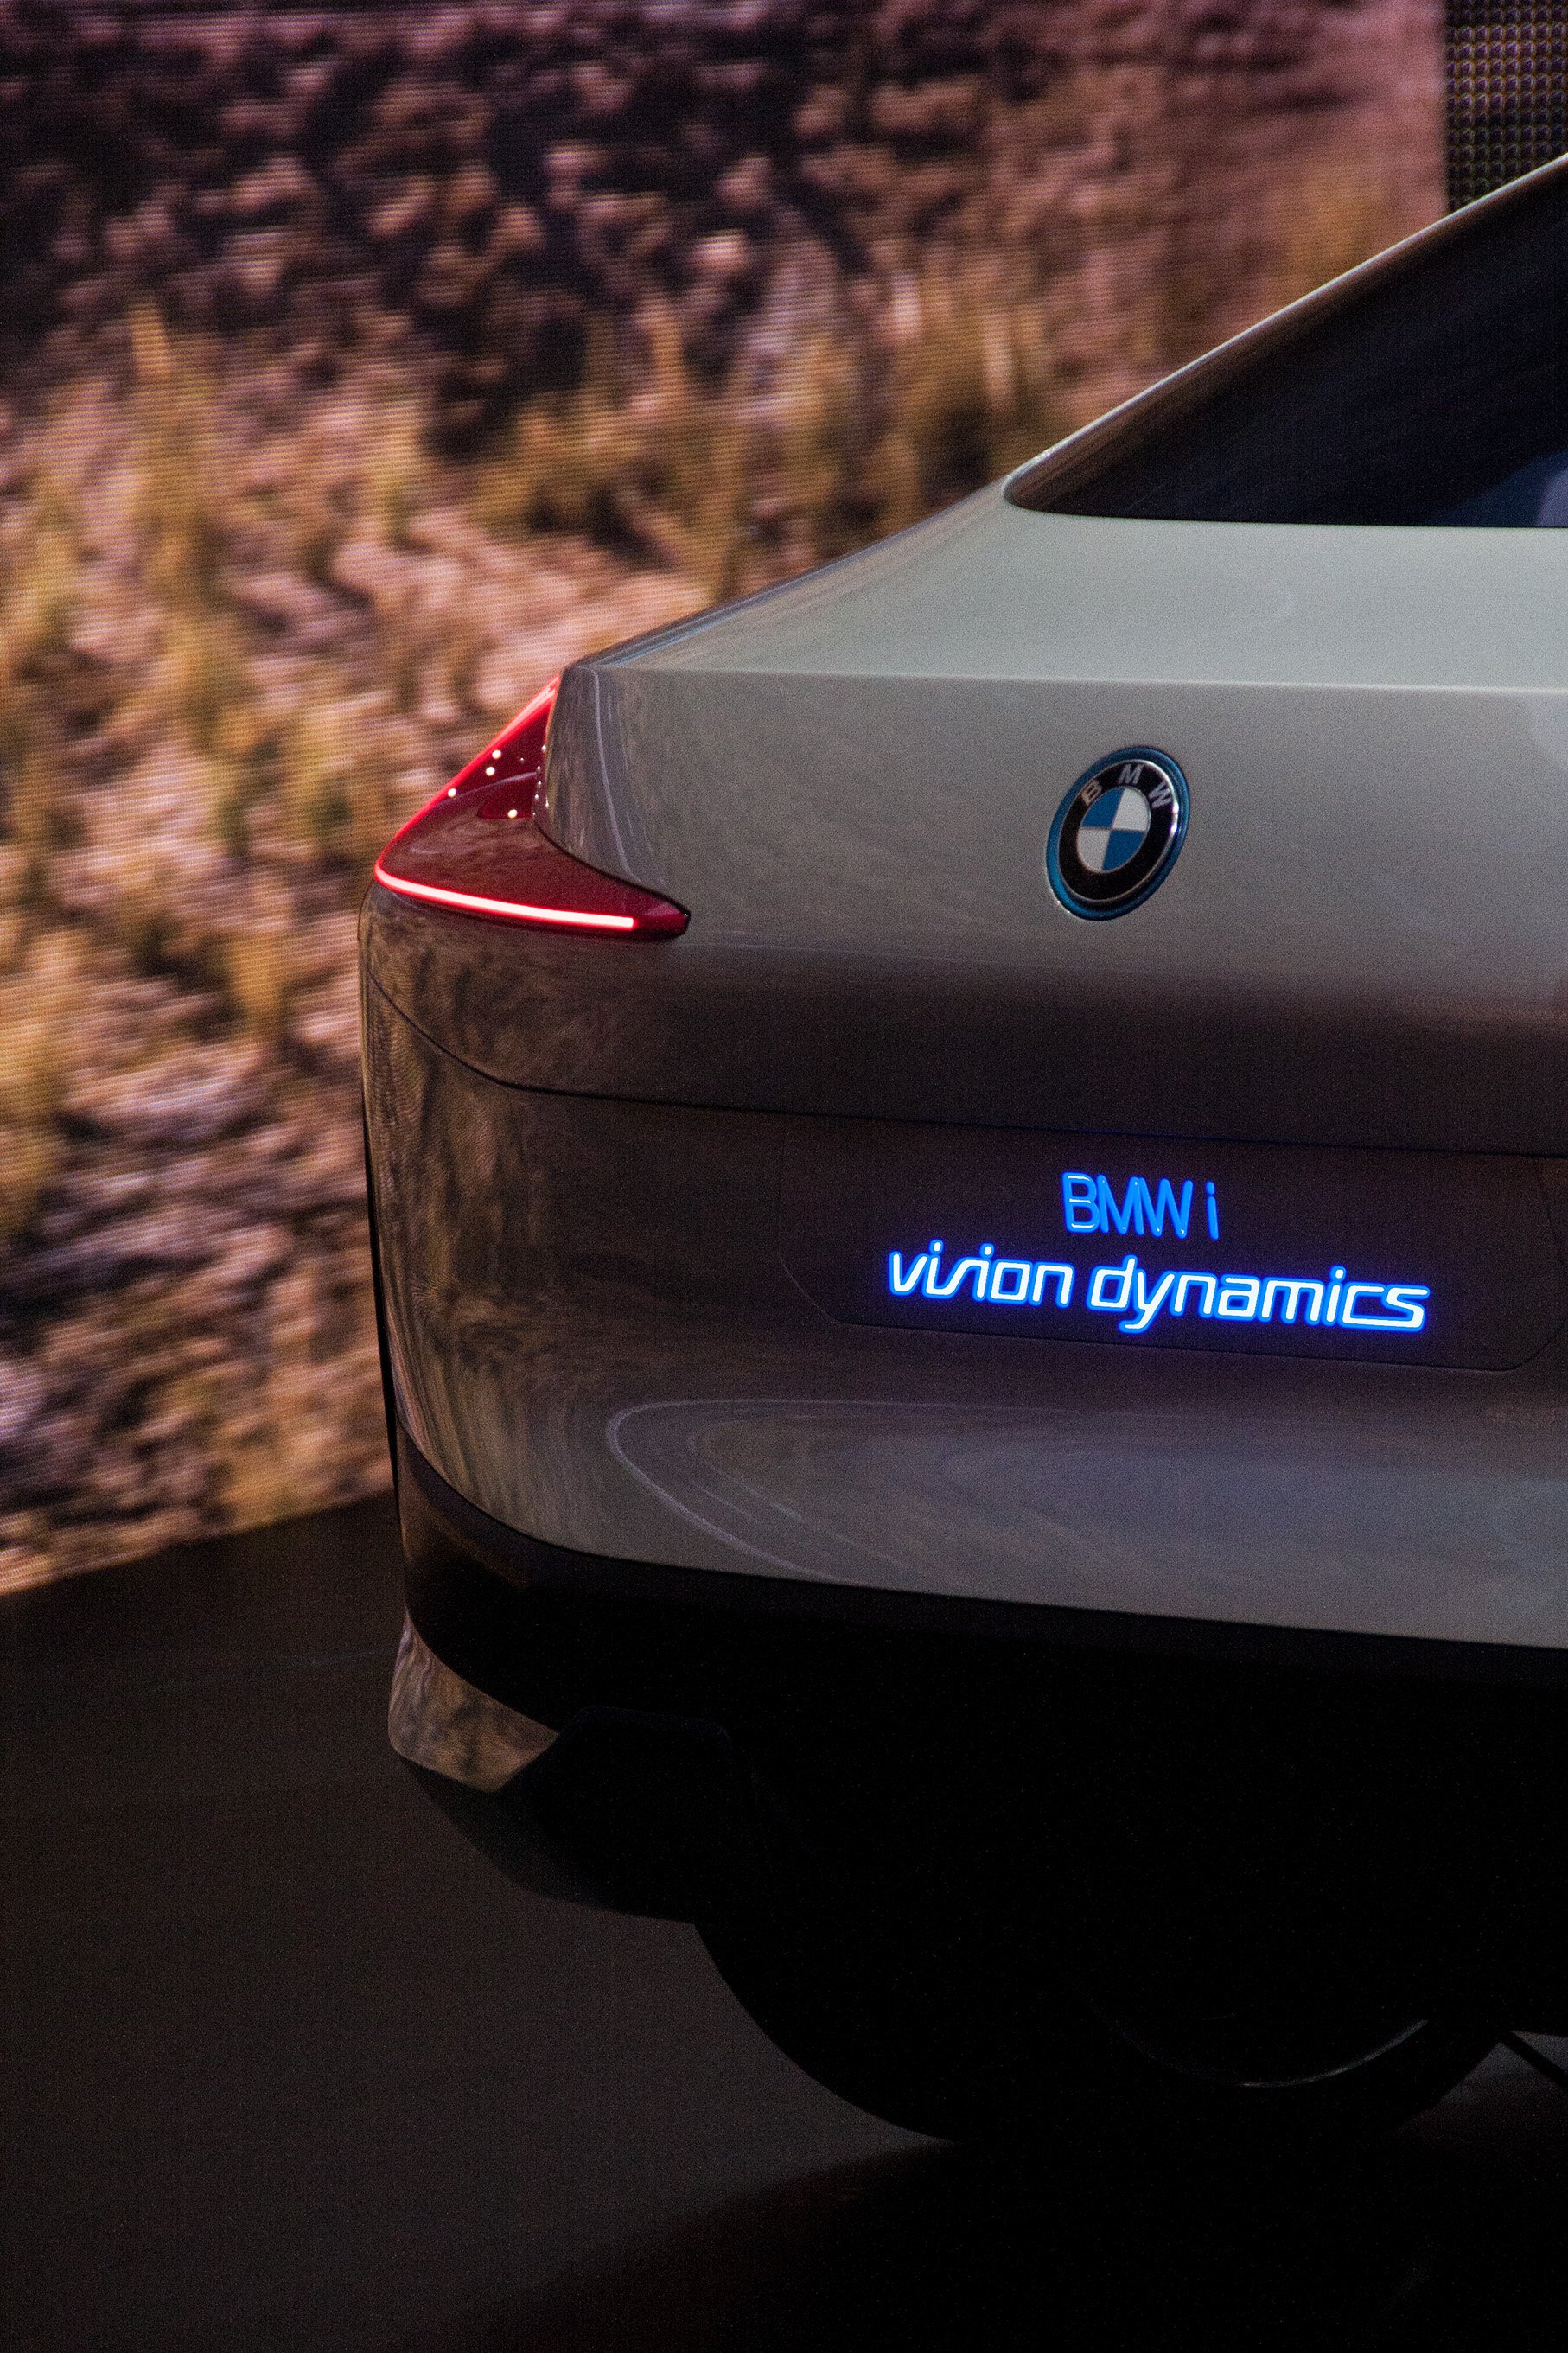 BMW_iVisionDynamics_Rear2.jpg